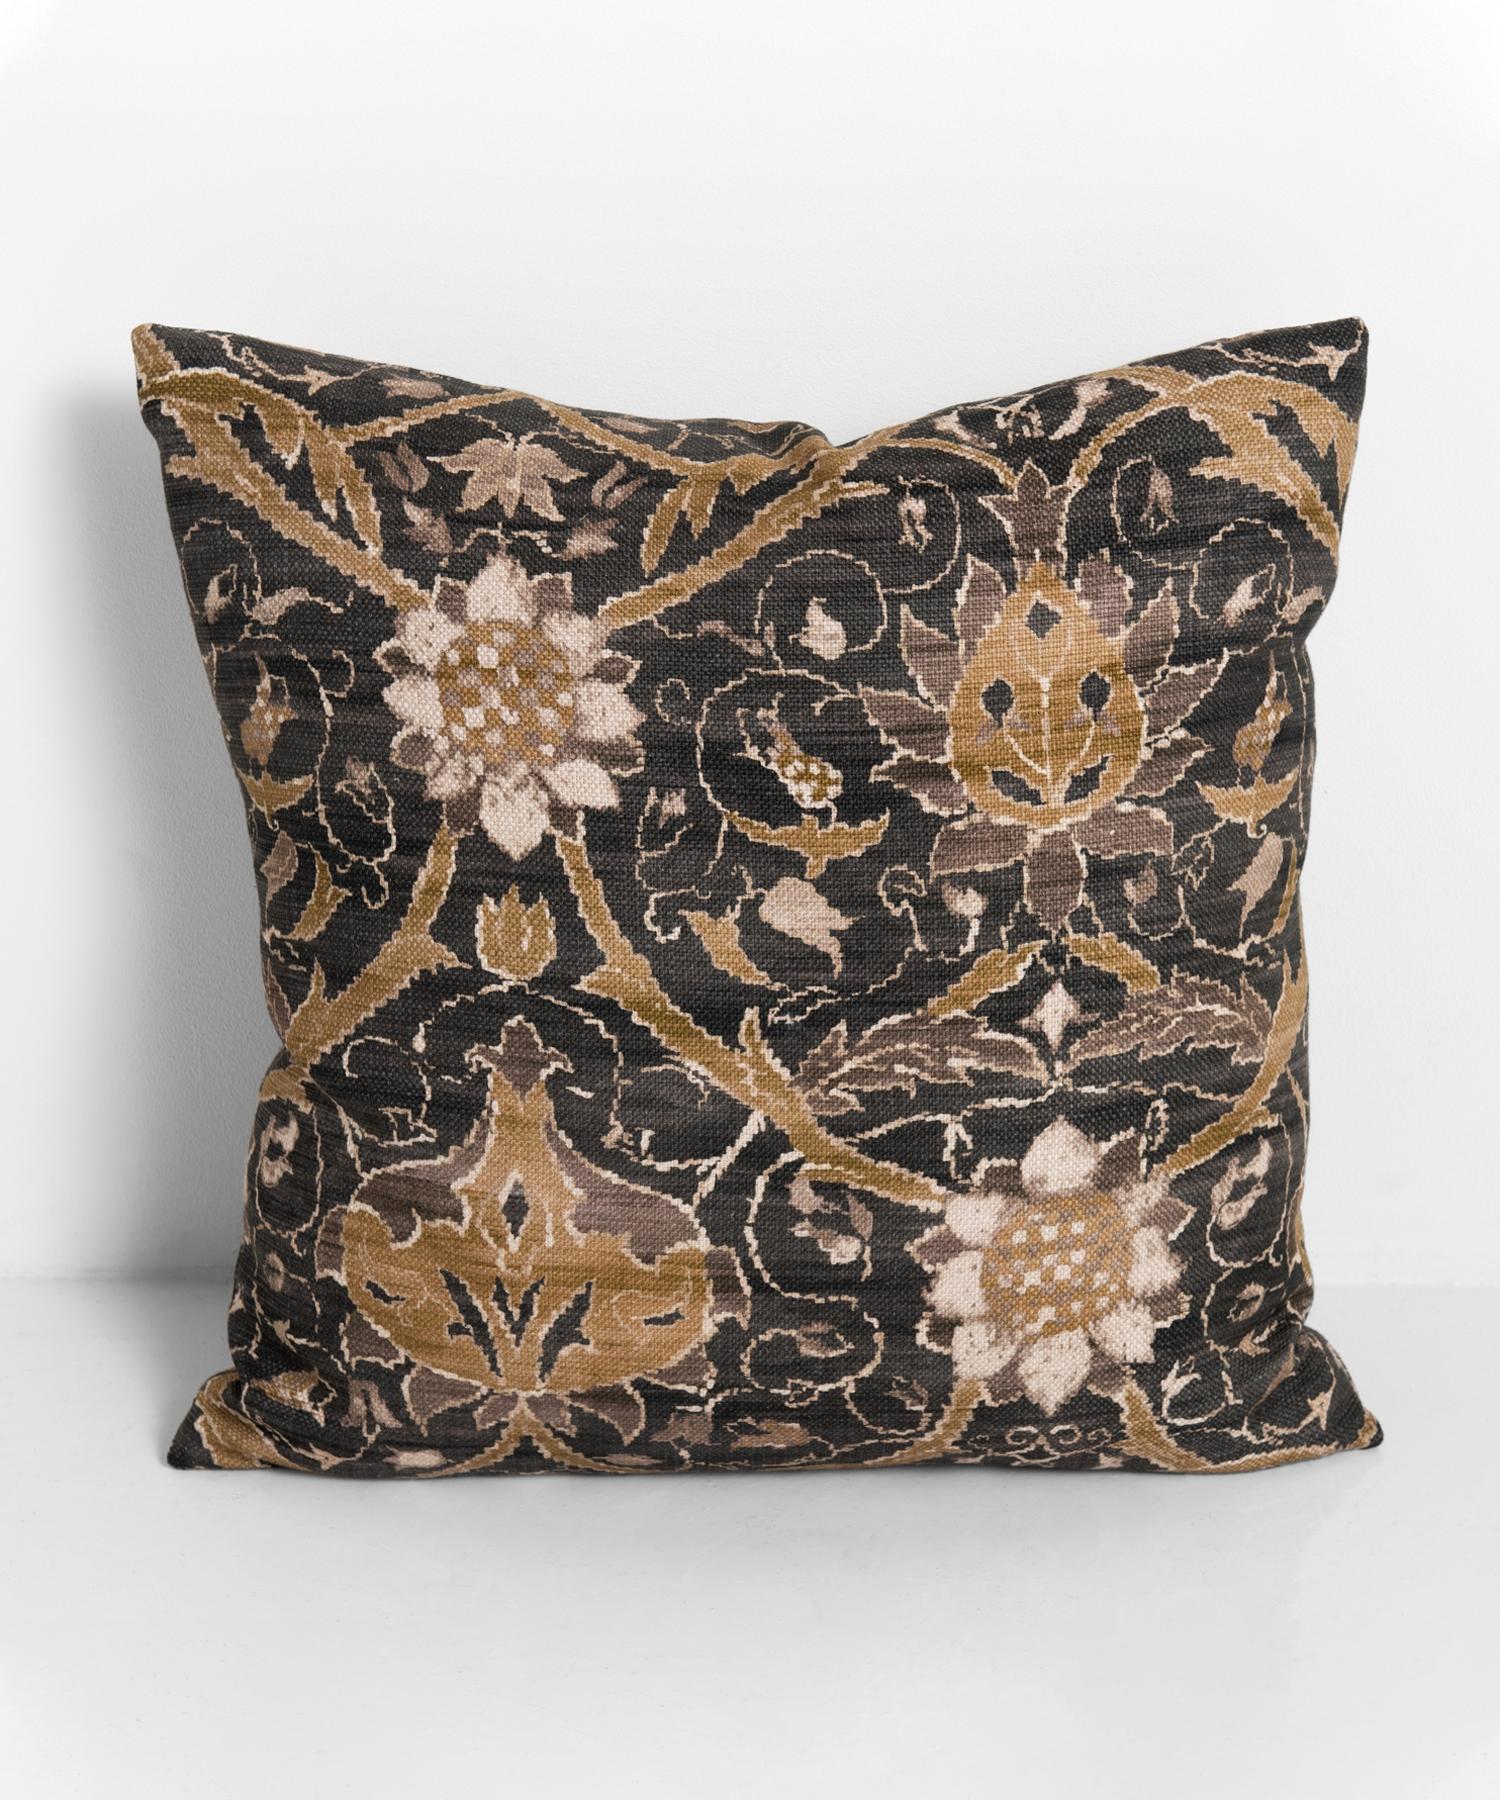 Contemporary William Morris Pillows, 21st Century